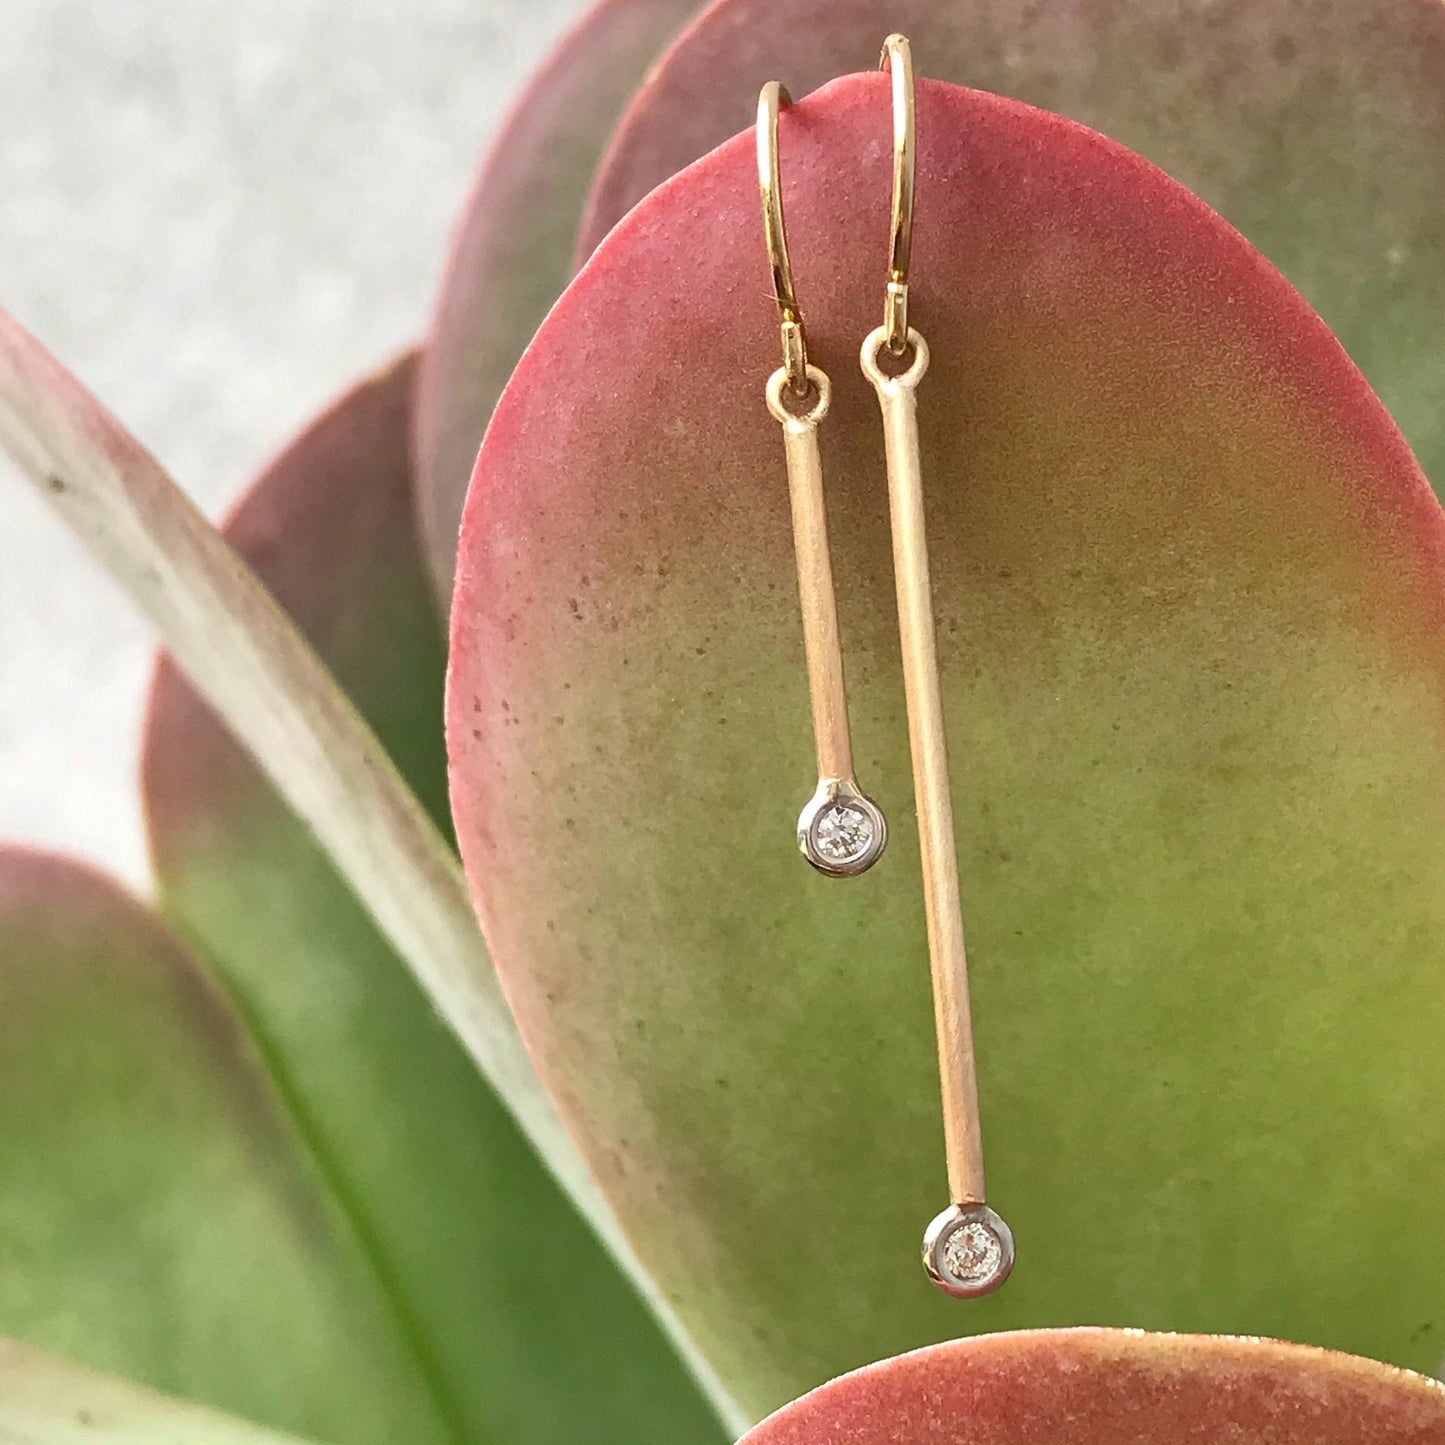 Pendulum Minimalist Rose Gold Diamond Earrings-earrings-NIXIN-Petite Pair-14k Rose Gold-Satin Finish-NIXIN